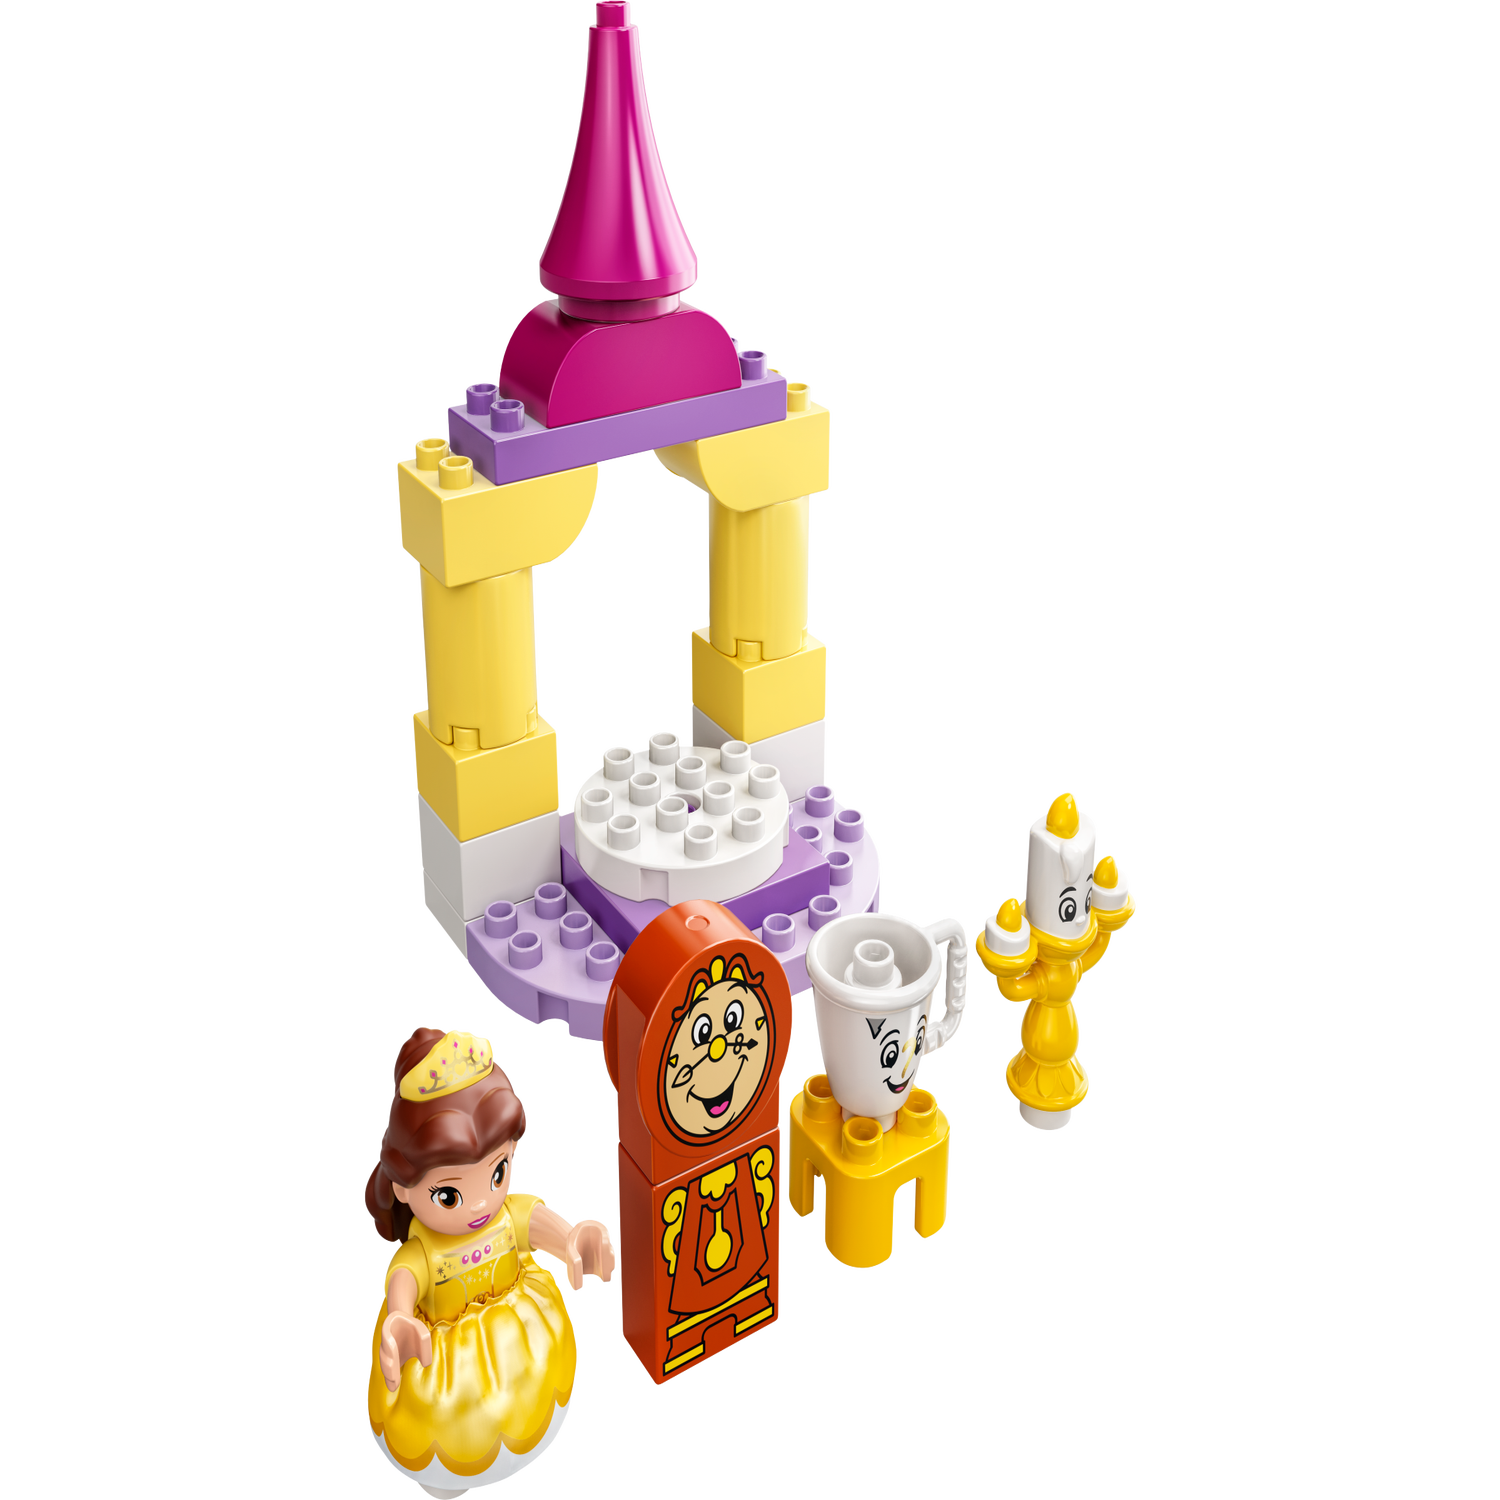 LEGO DUPLO Disney 10960 - La Salle de Bal de Belle, Château Princesse Jouet  Enfants +2 Ans pas cher 